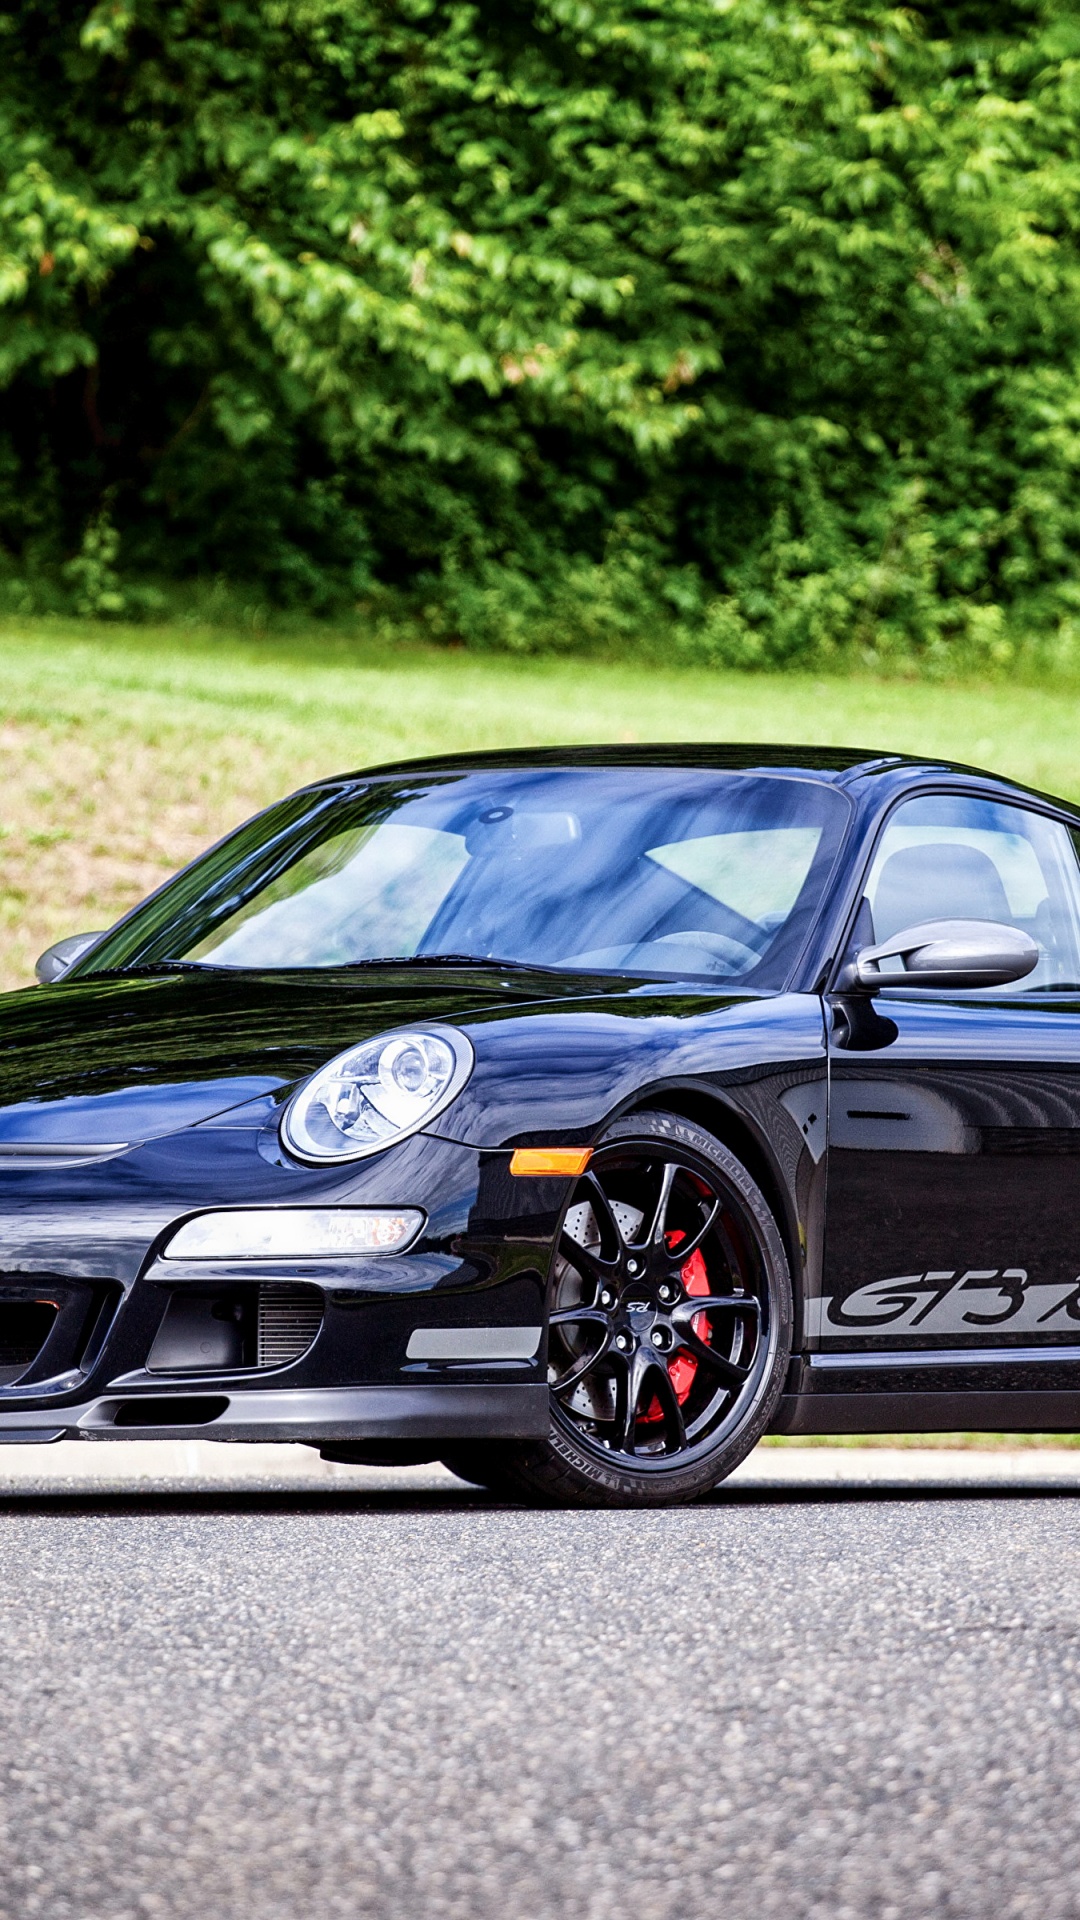 Black Porsche 911 on Road During Daytime. Wallpaper in 1080x1920 Resolution